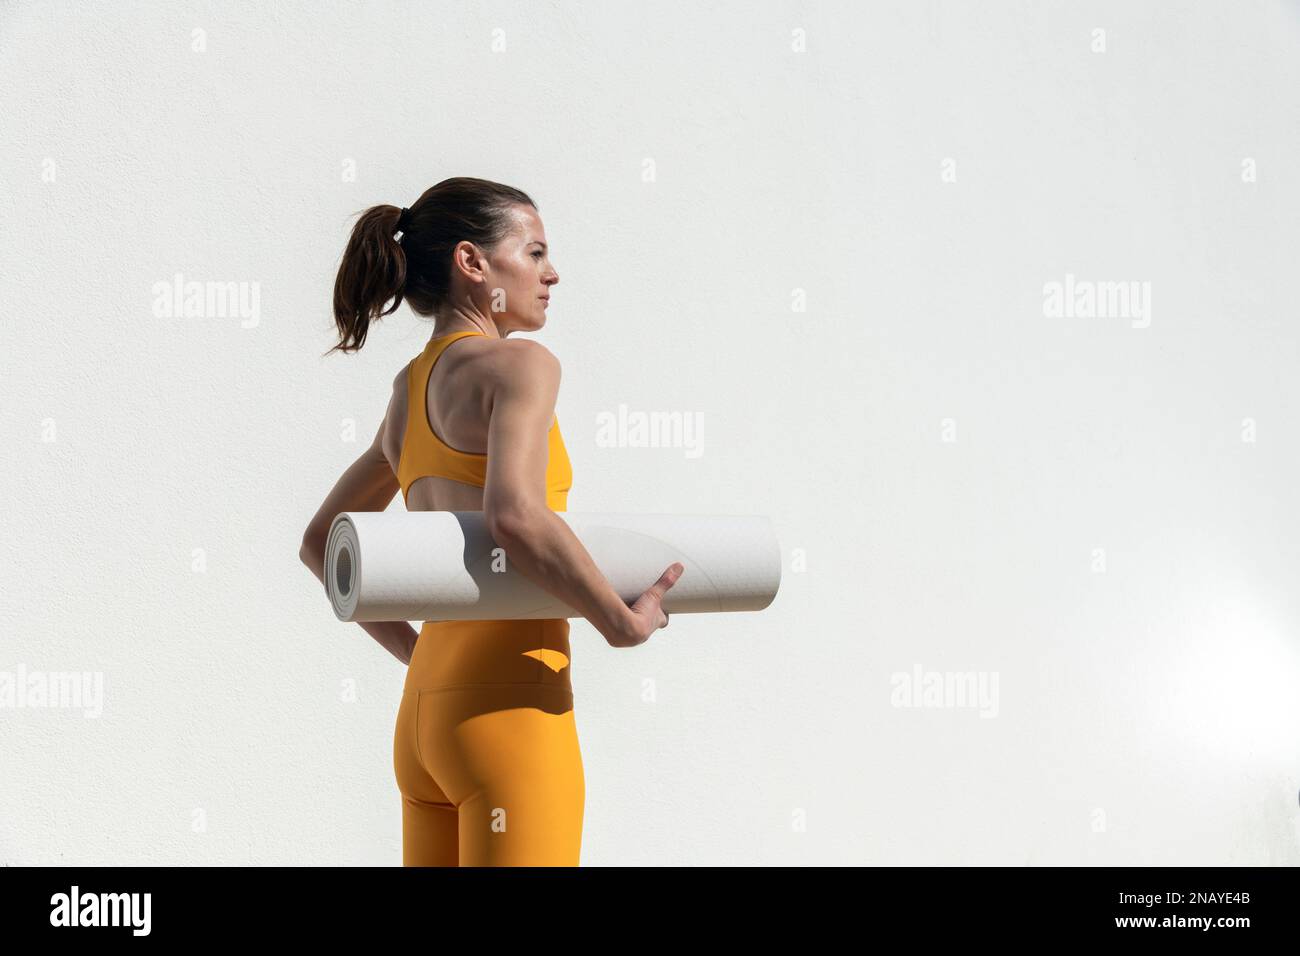 Mujer deportiva que lleva un yoga, estera de ejercicio, fuera por una pared blanca. Foto de stock